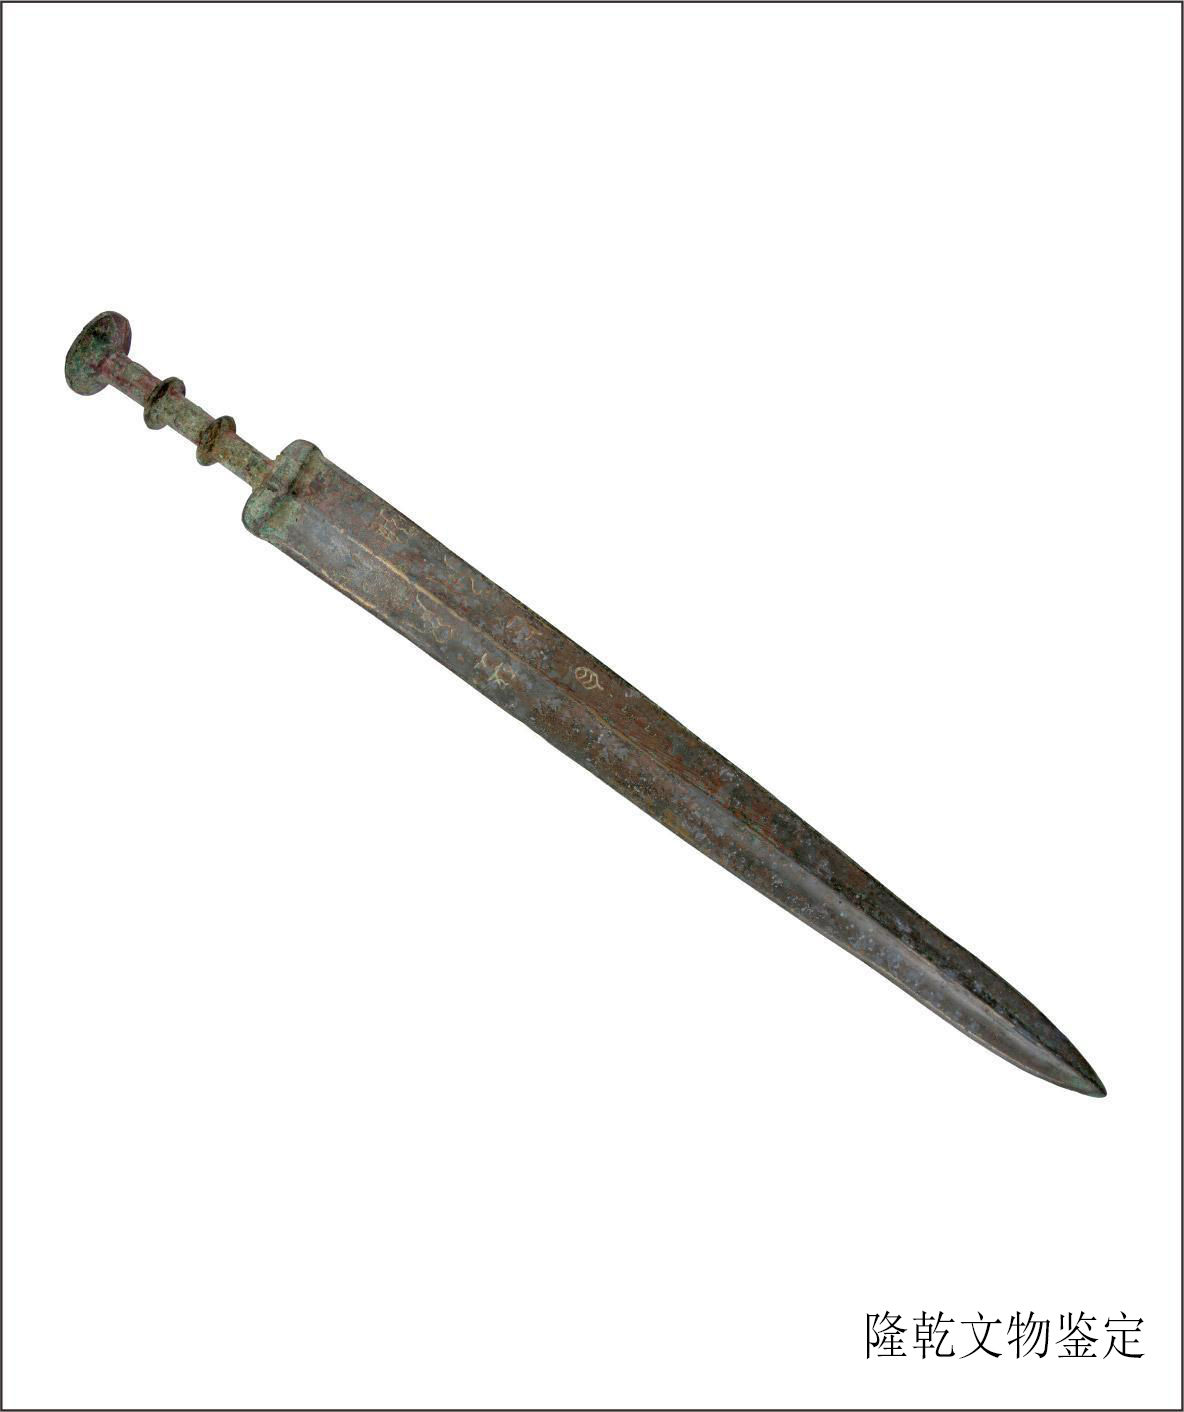 战国青铜剑,是古代贵族与战士佩带的用以格斗击刺的兵器.